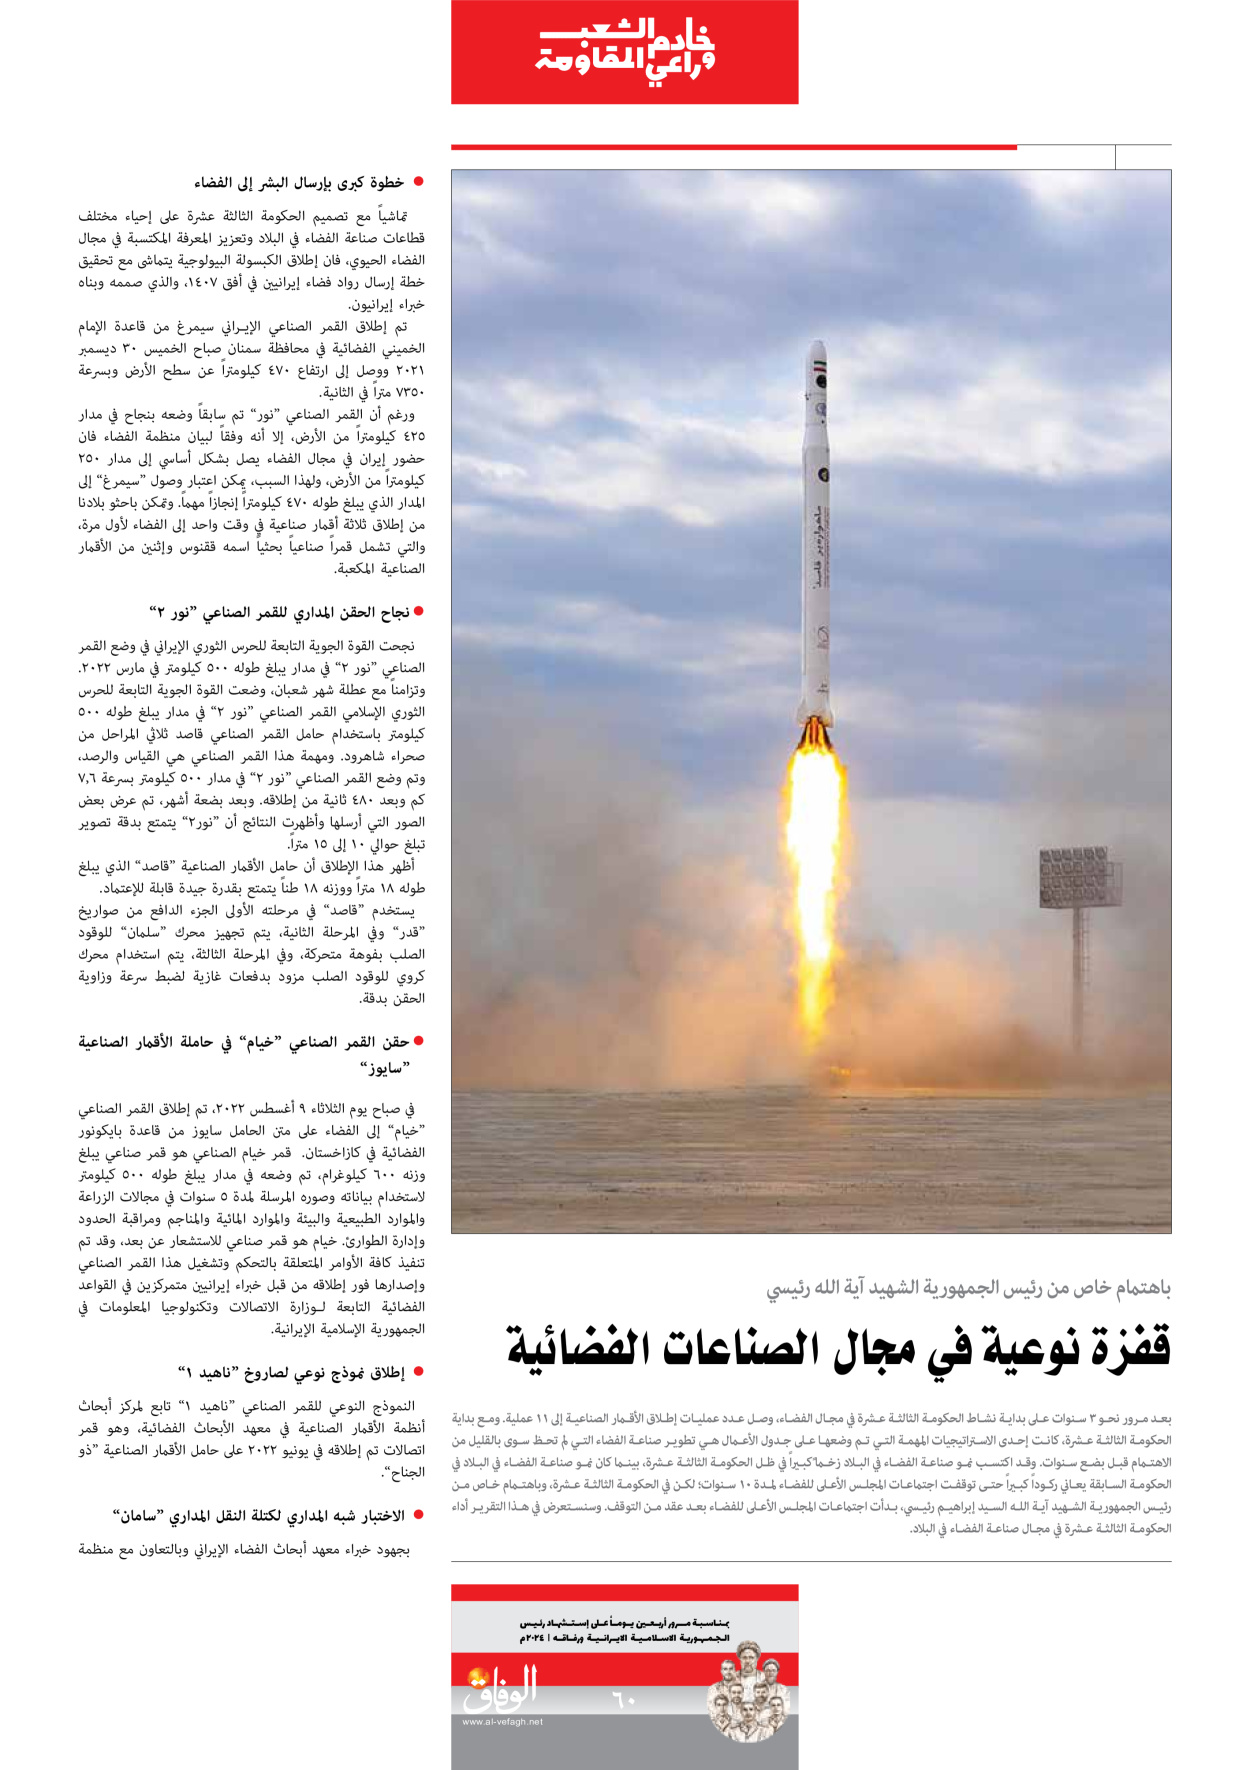 صحیفة ایران الدولیة الوفاق - ملحق ویژه نامه چهلم شهید رییسی - ٢٩ يونيو ٢٠٢٤ - الصفحة ٦۰